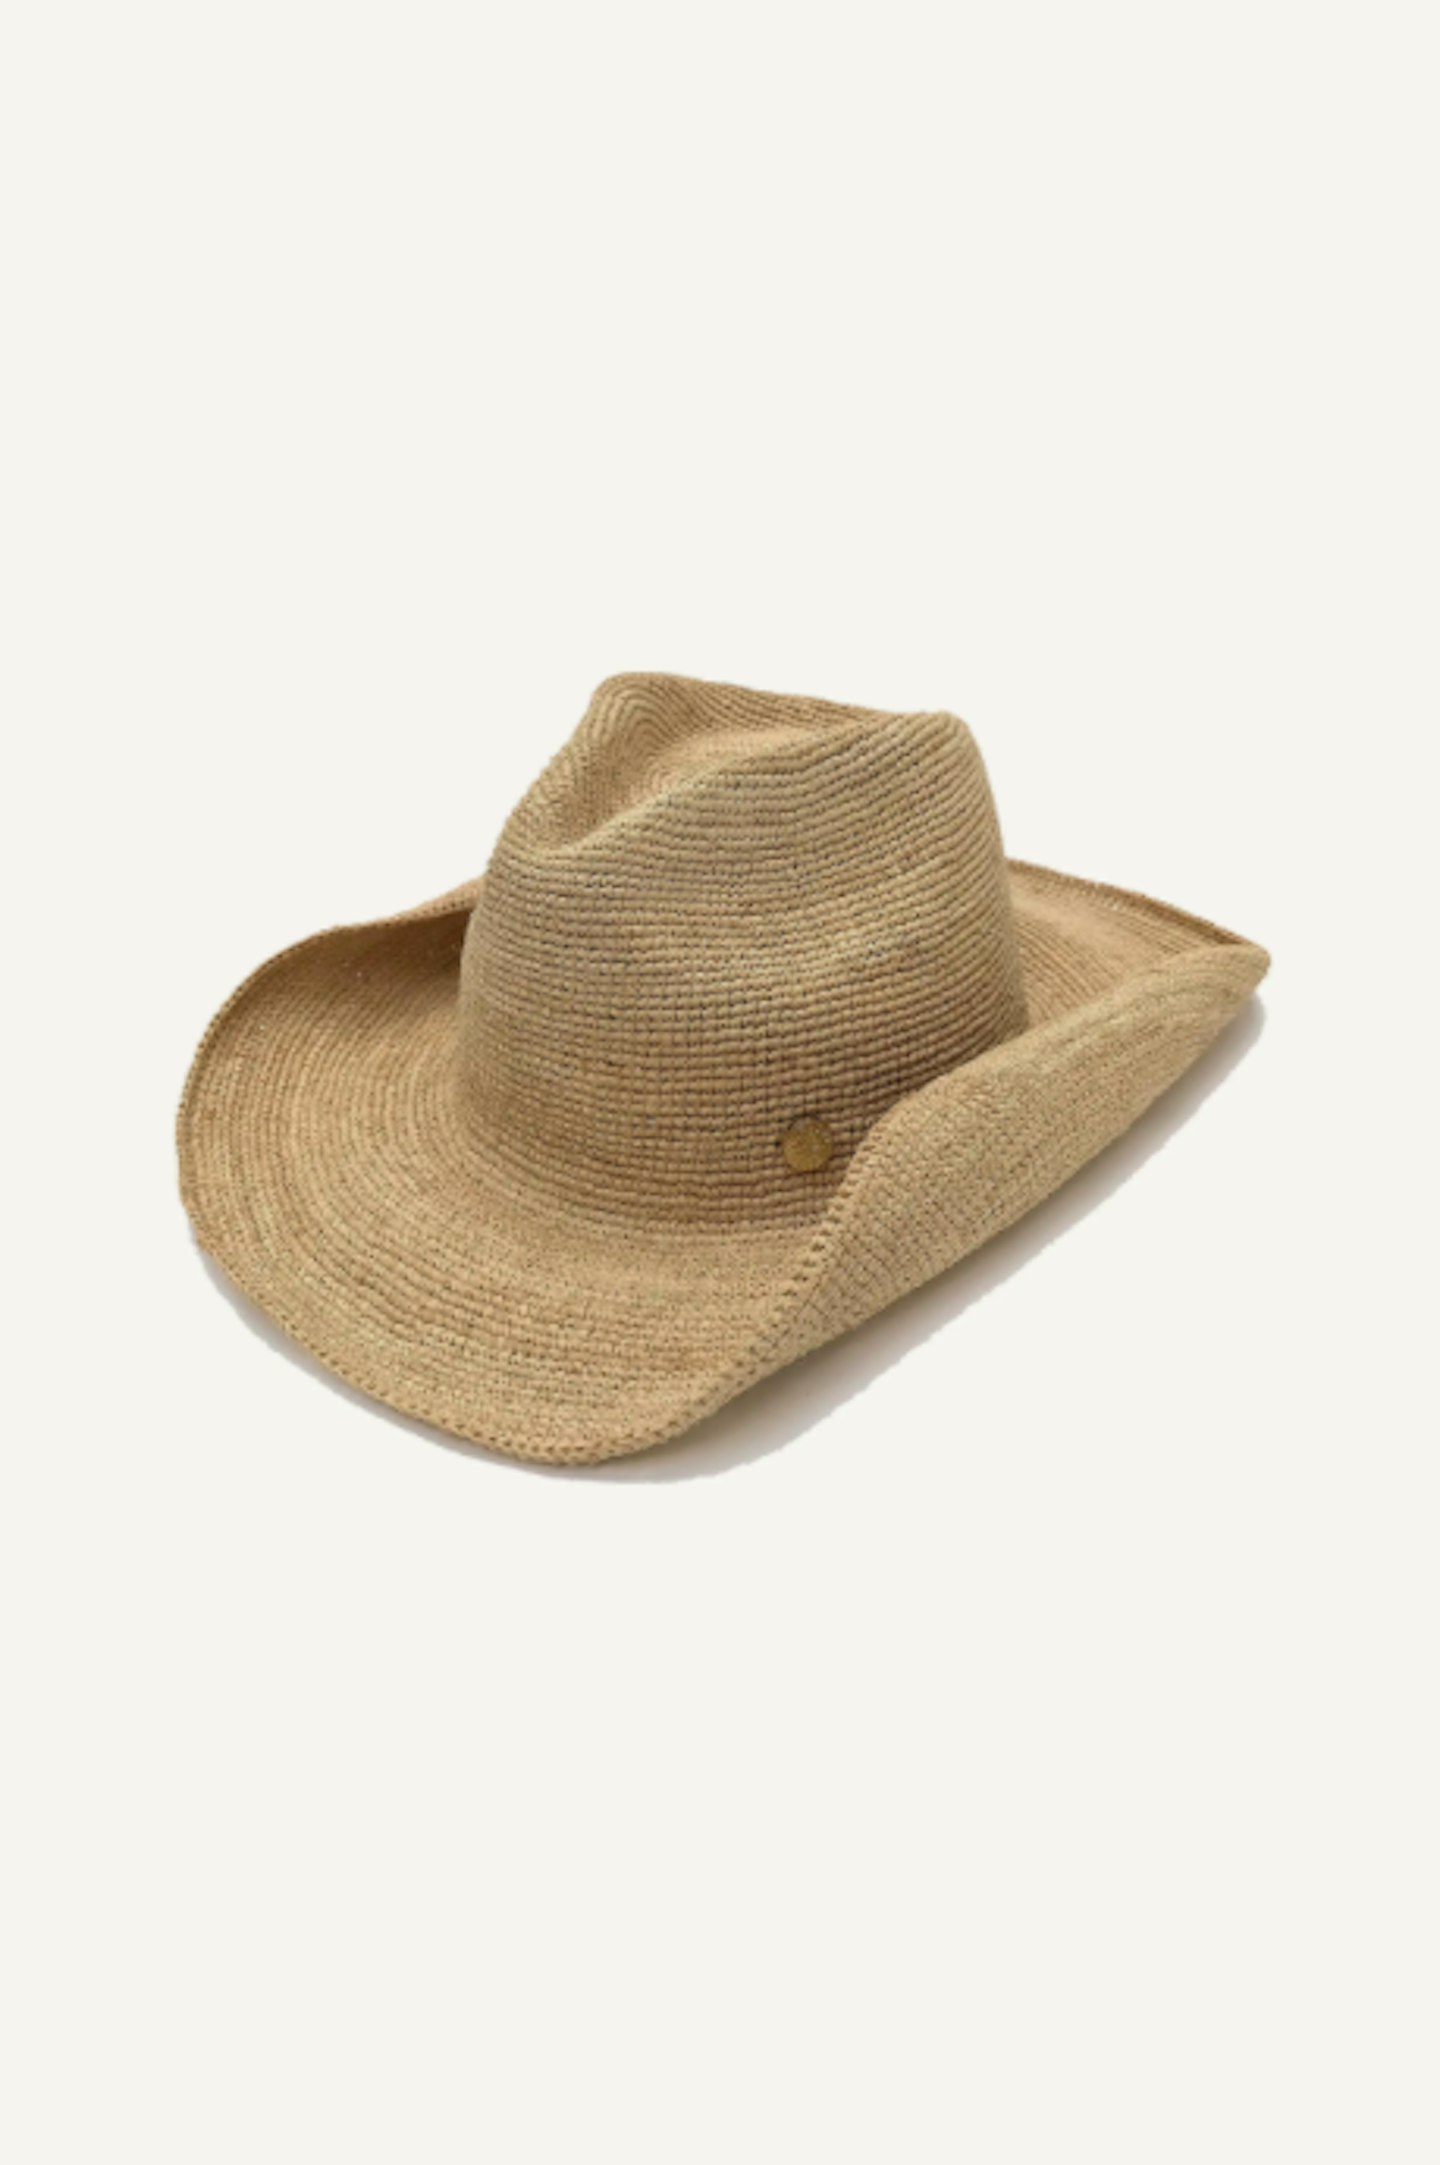 Heidi Klein, Cape Elizabeth Raffia Cowboy Hat, £125